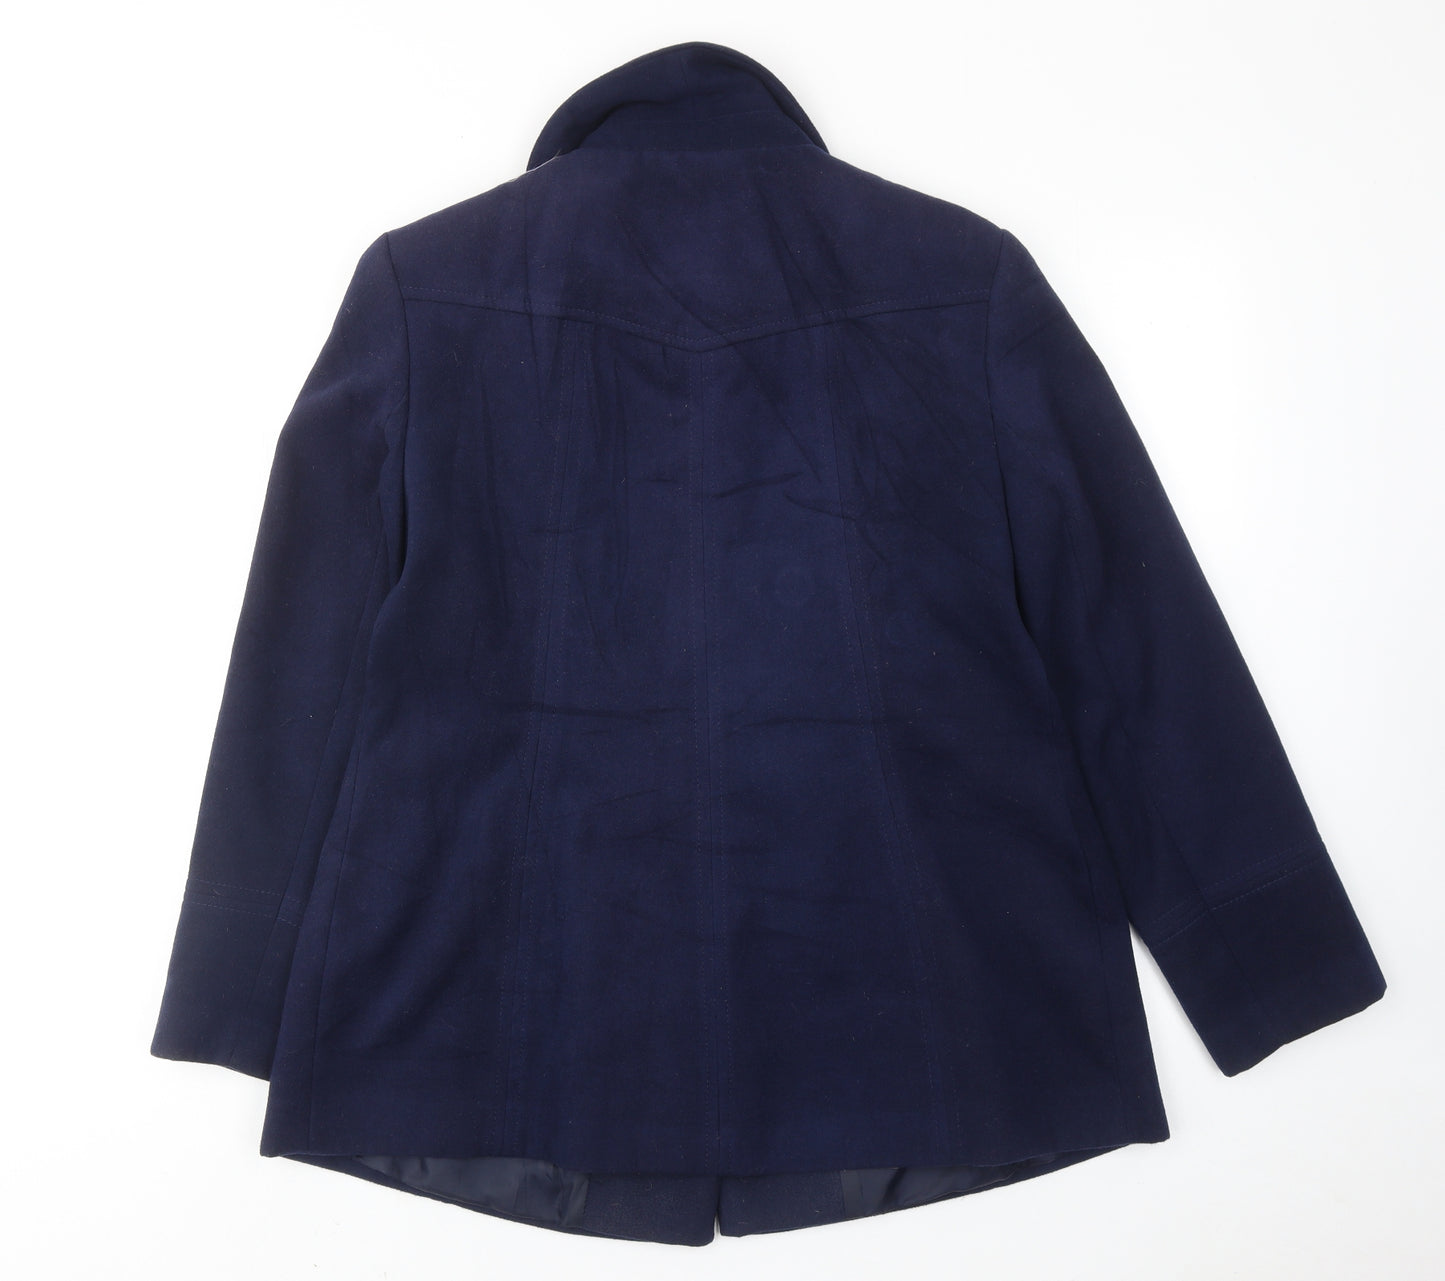 Bonmarché Womens Blue Pea Coat Coat Size 16 Button